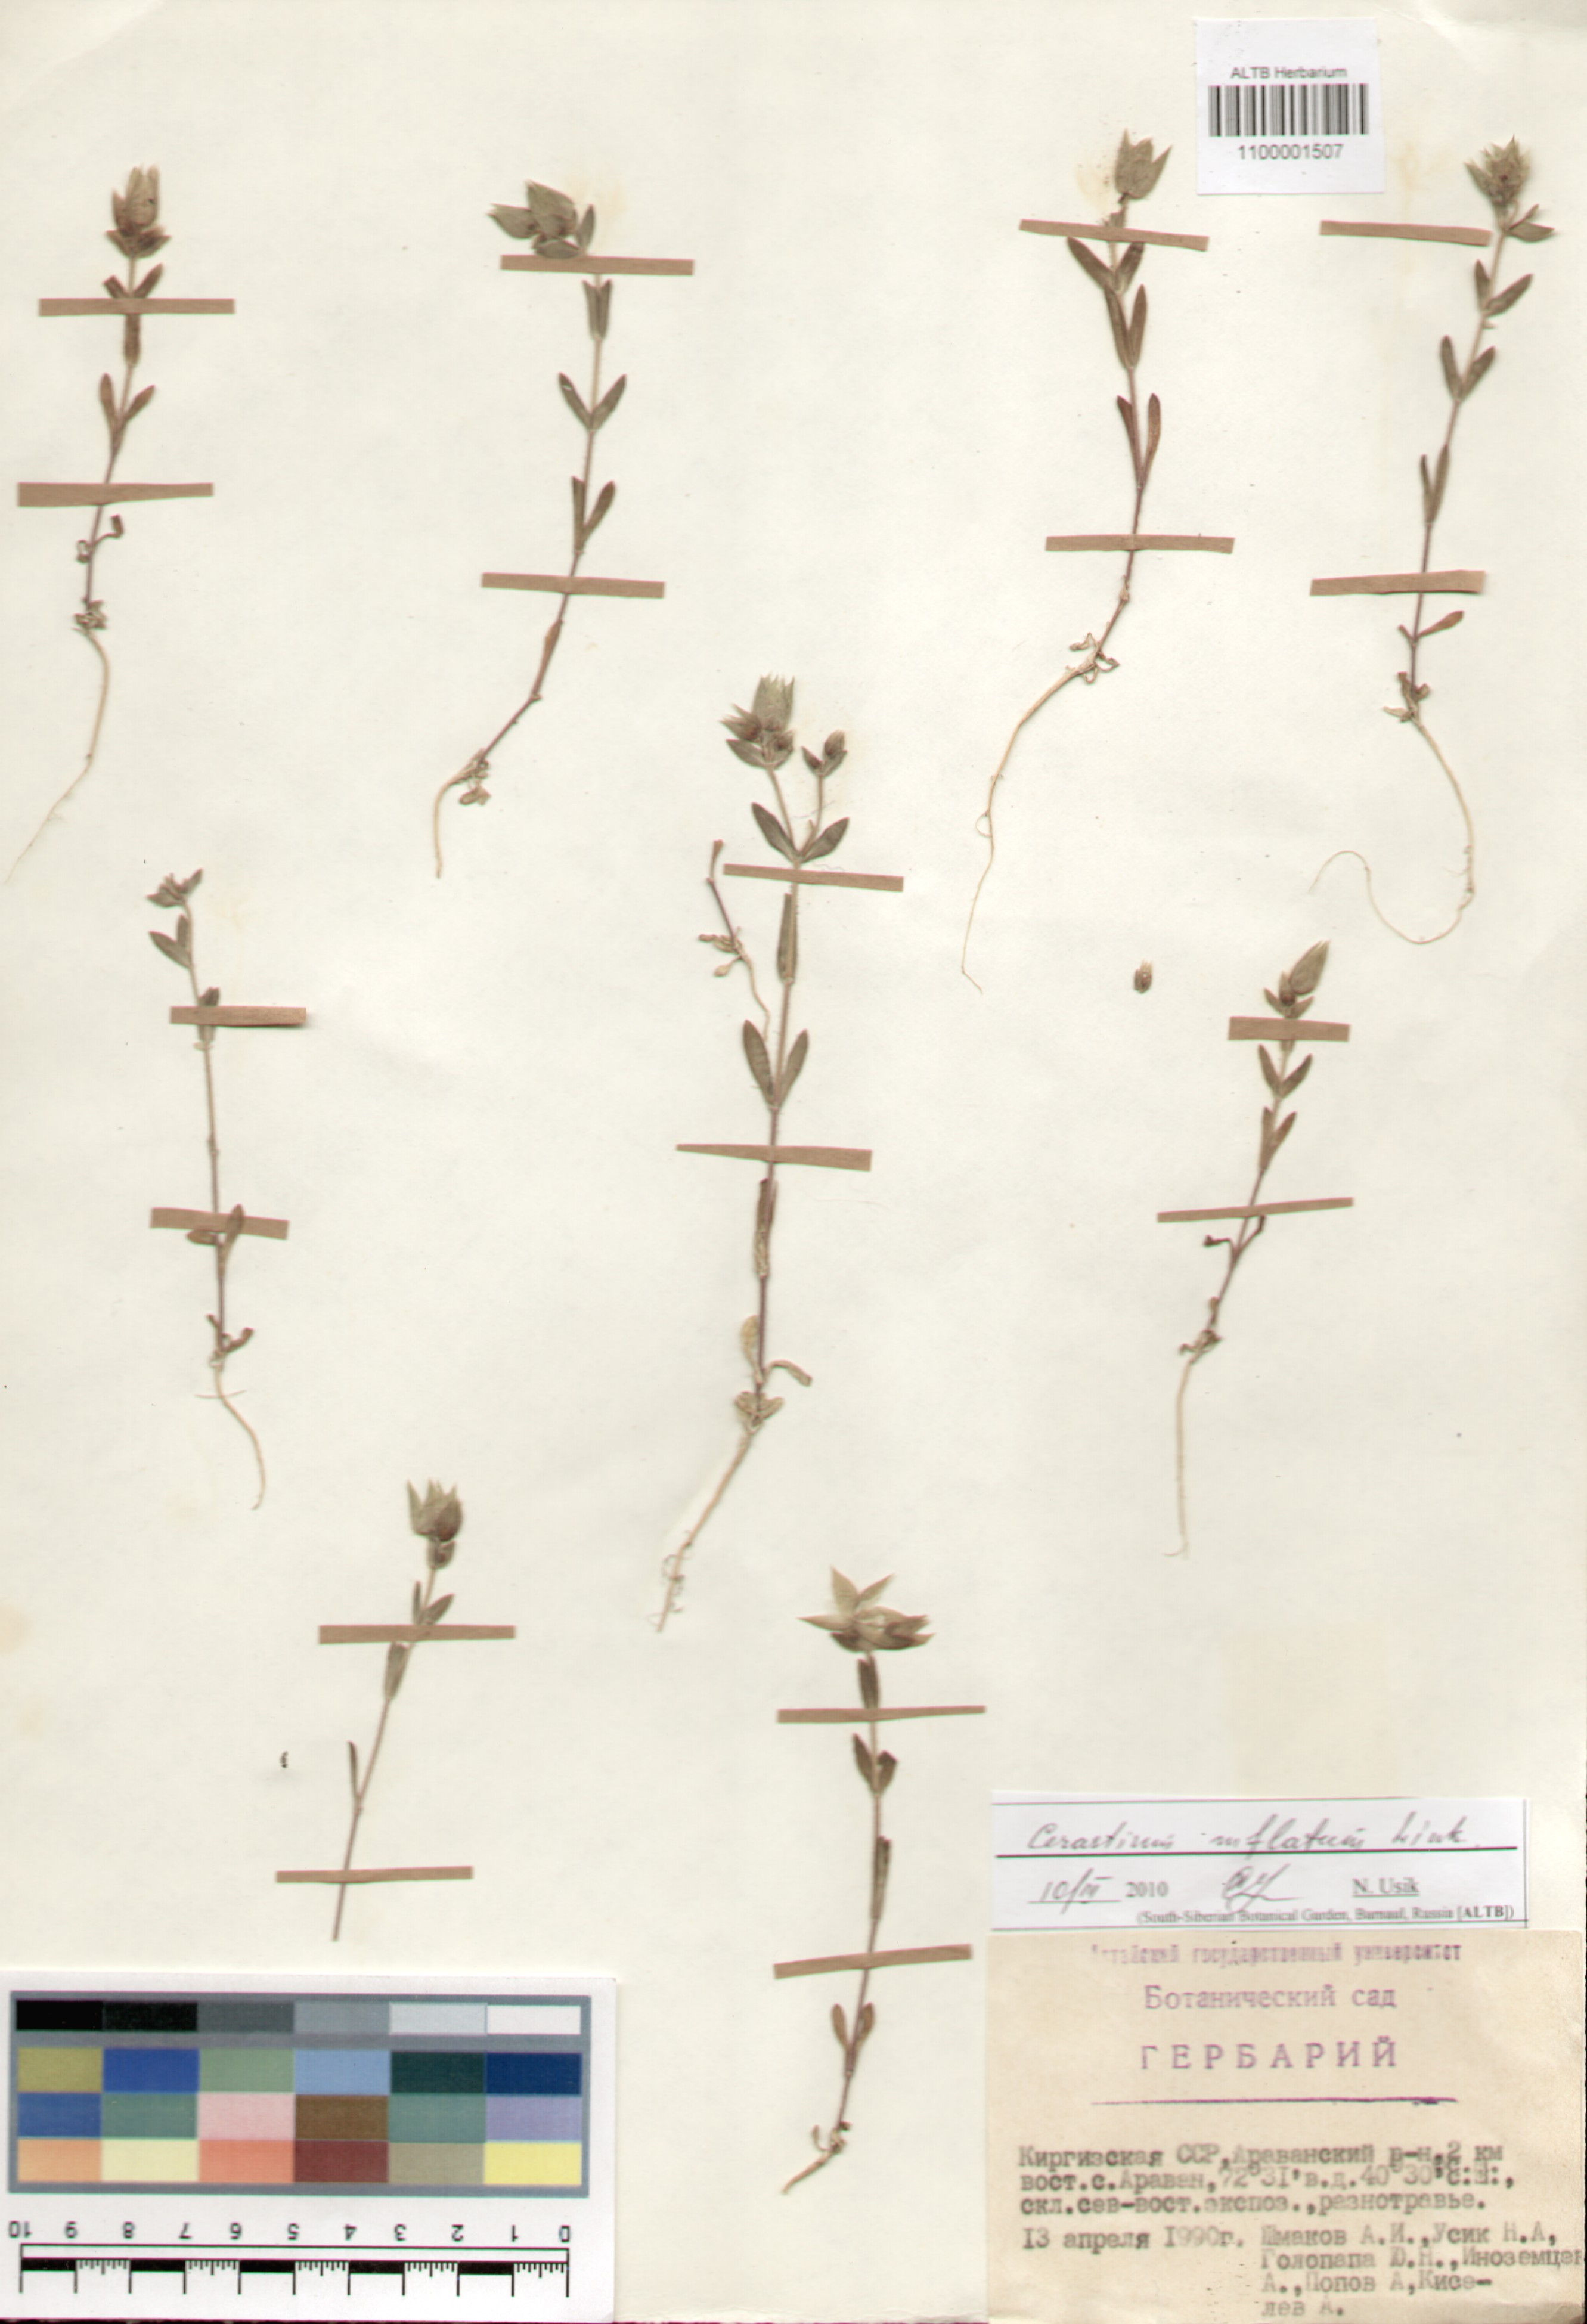 Caryophyllaceae,Cerastium inflatum Link.